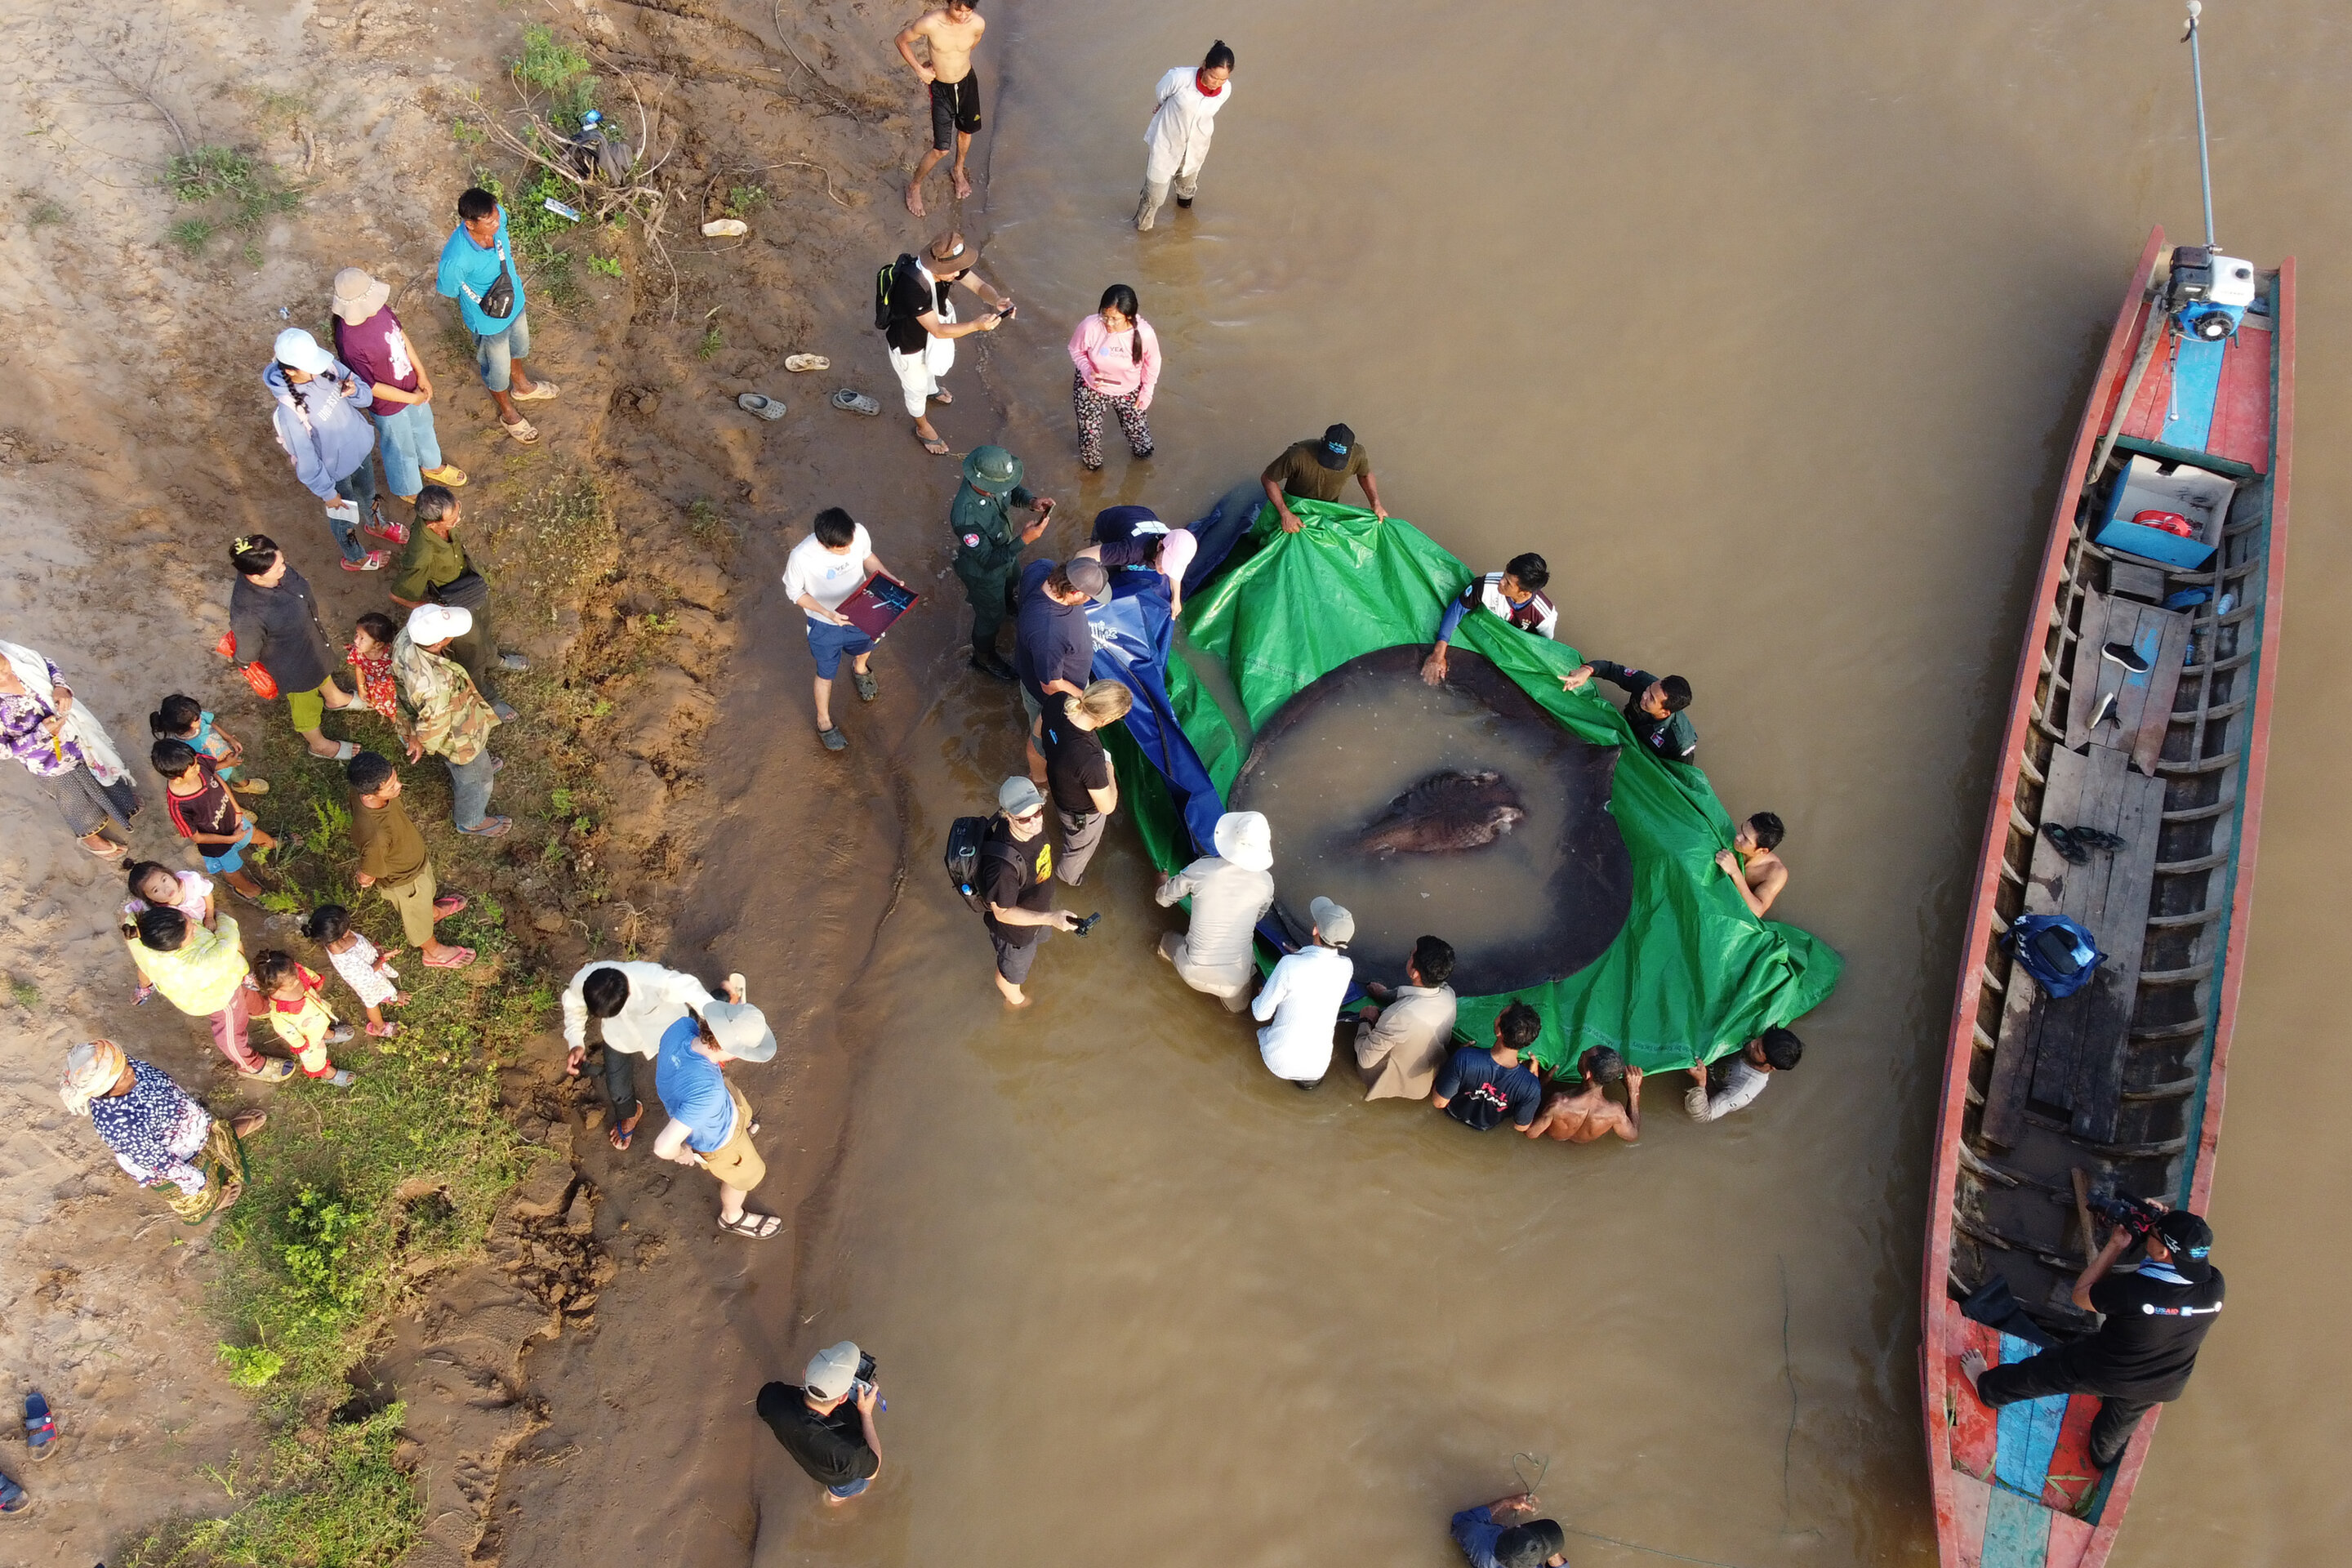 柬埔寨渔民在湄公河流域捕到一条近300公斤重的黄貂鱼 是有记录以来世界上最大淡水鱼